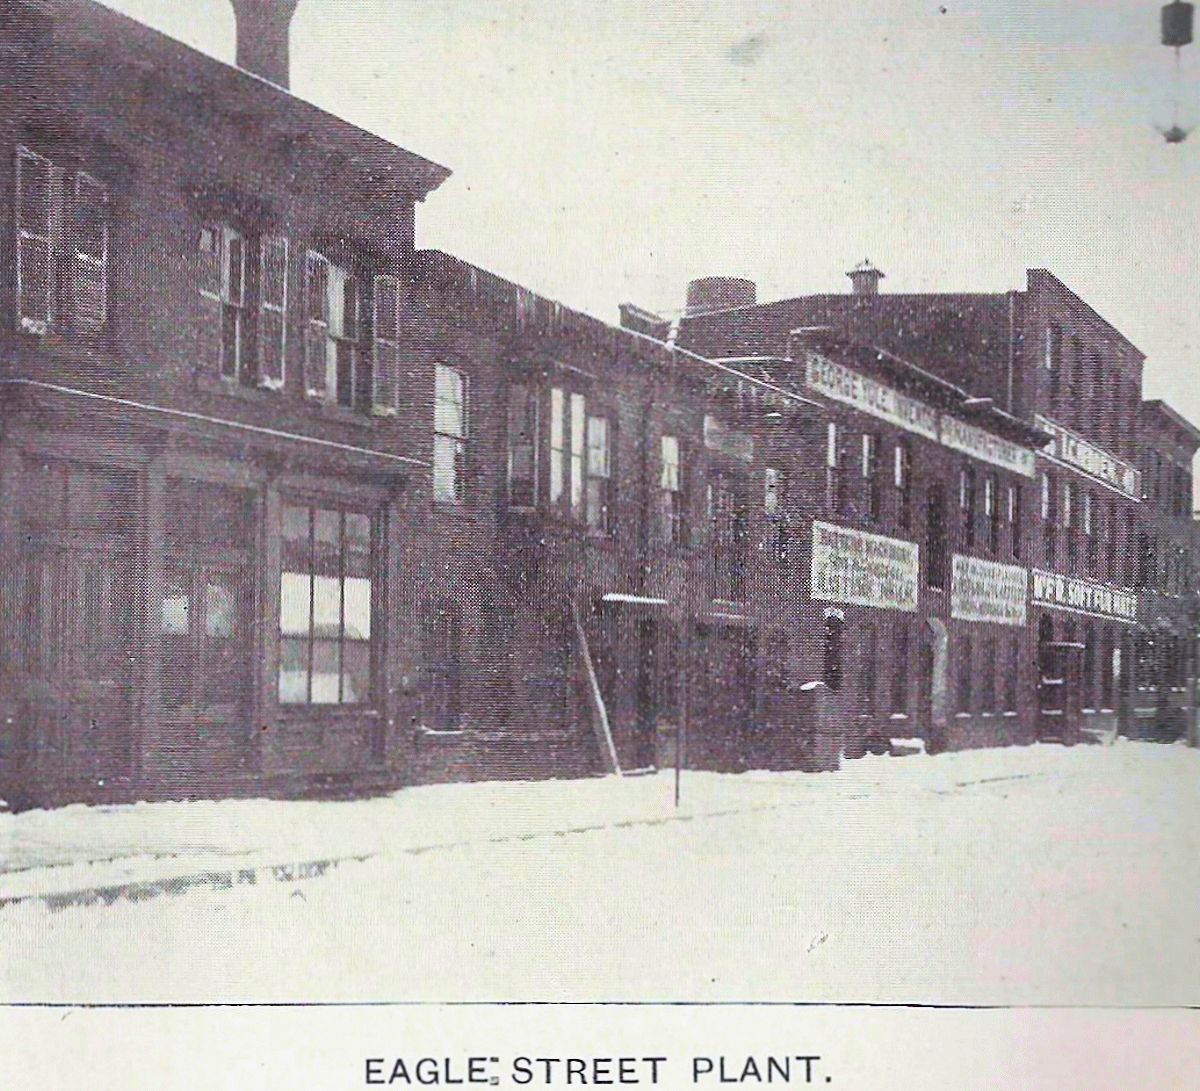 28 Eagles Street
George Yule Manufacturer - 1901
